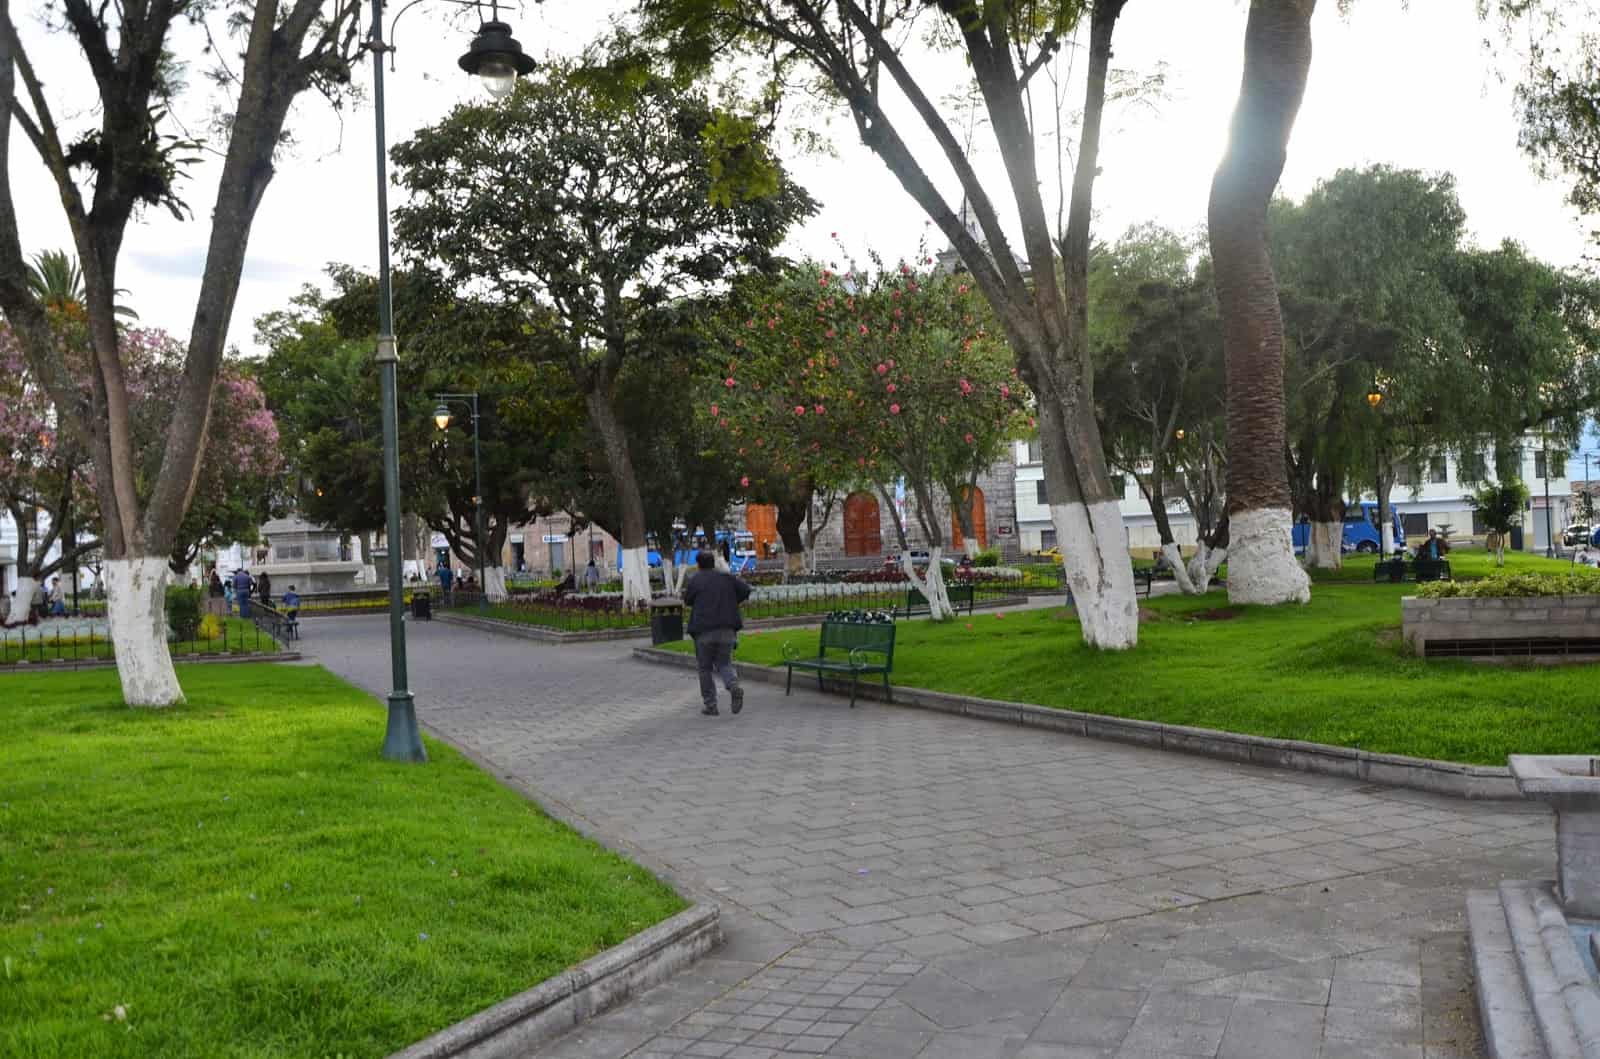 Parque La Merced in Ibarra, Ecuador